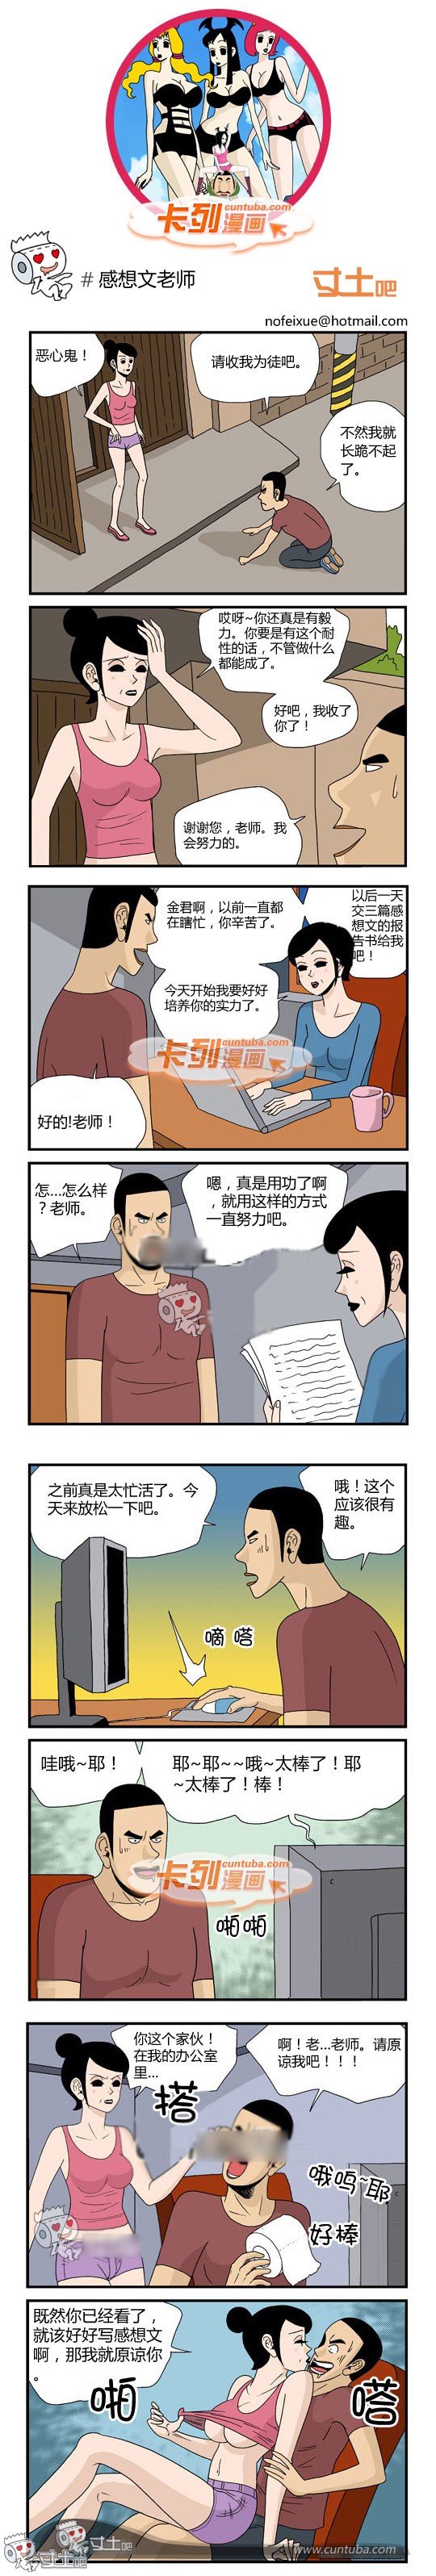 175.卡列漫画感想文老师